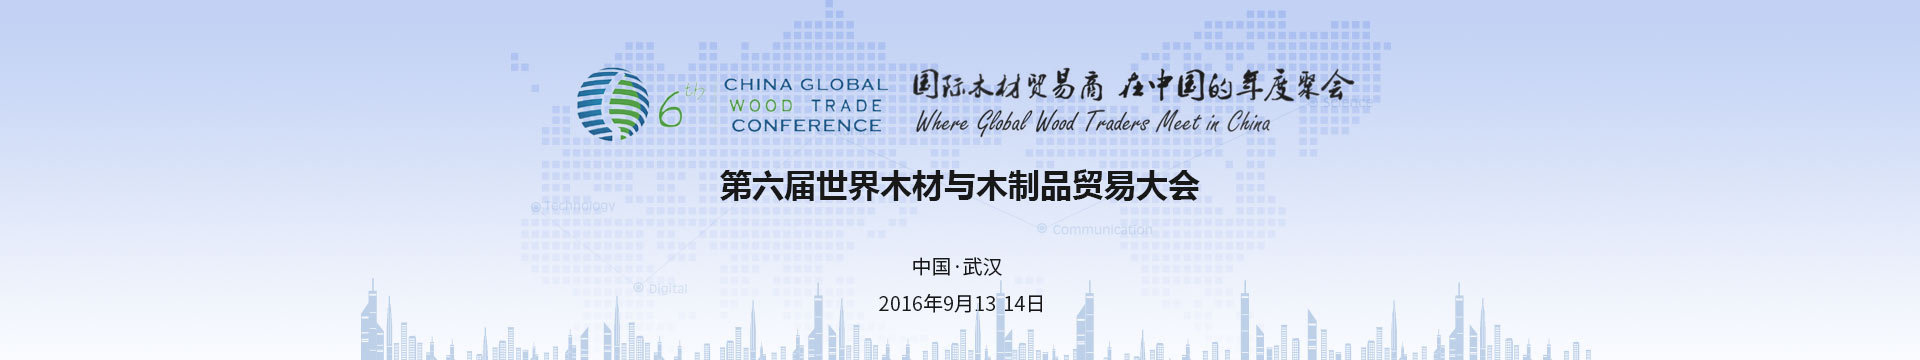 2016第六届世界木材与木制品贸易大会